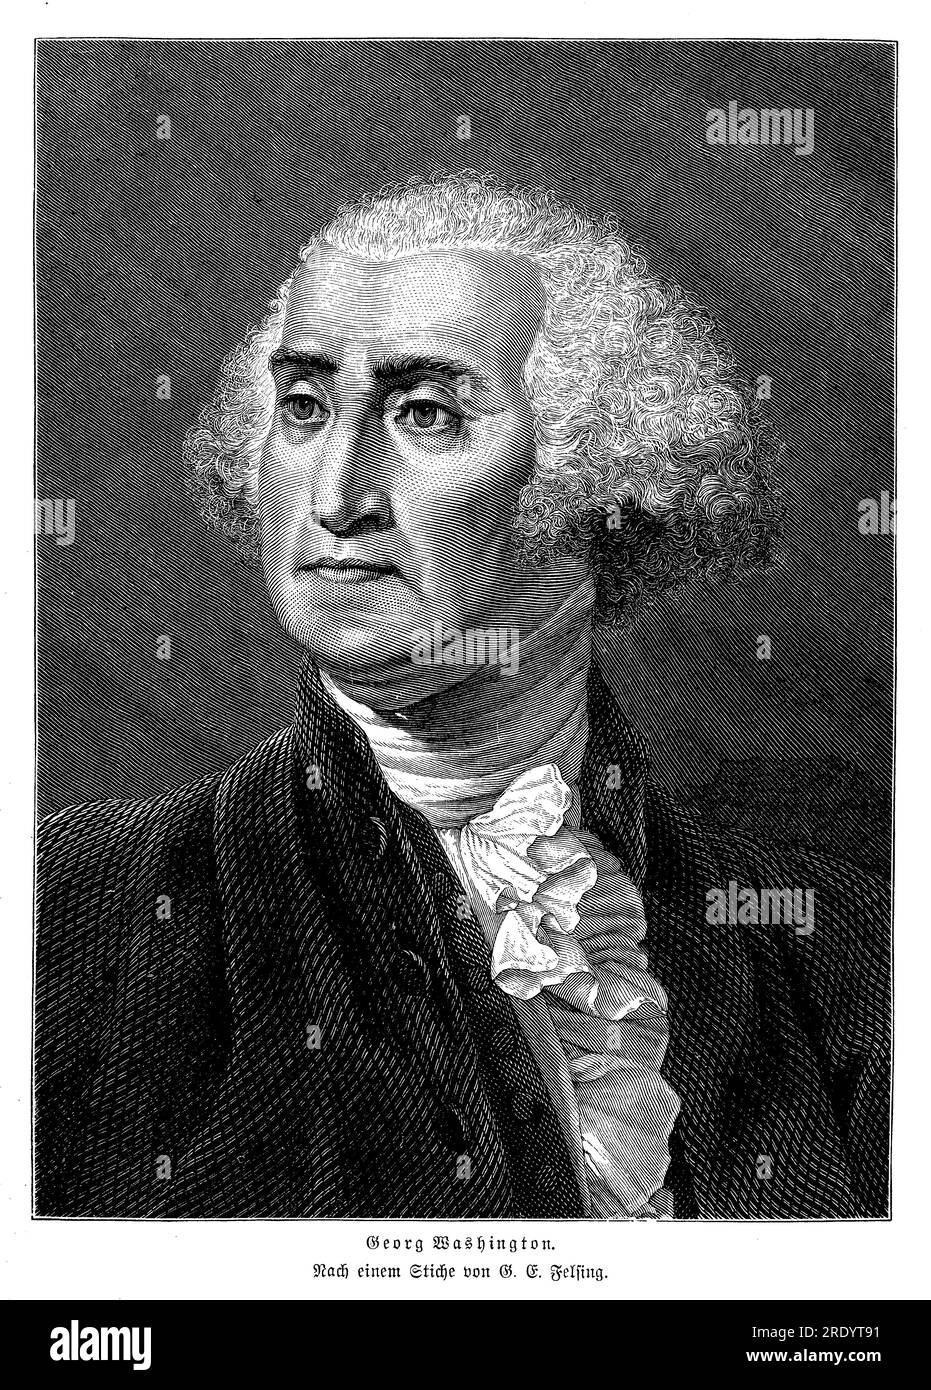 George Washington (1732-1799) è stato un leader militare statunitense, statista e primo presidente degli Stati Uniti (1789-1797). Giocò un ruolo fondamentale nella guerra di indipendenza americana, comandando l'Esercito continentale e guidando le colonie alla vittoria contro le forze britanniche. Foto Stock